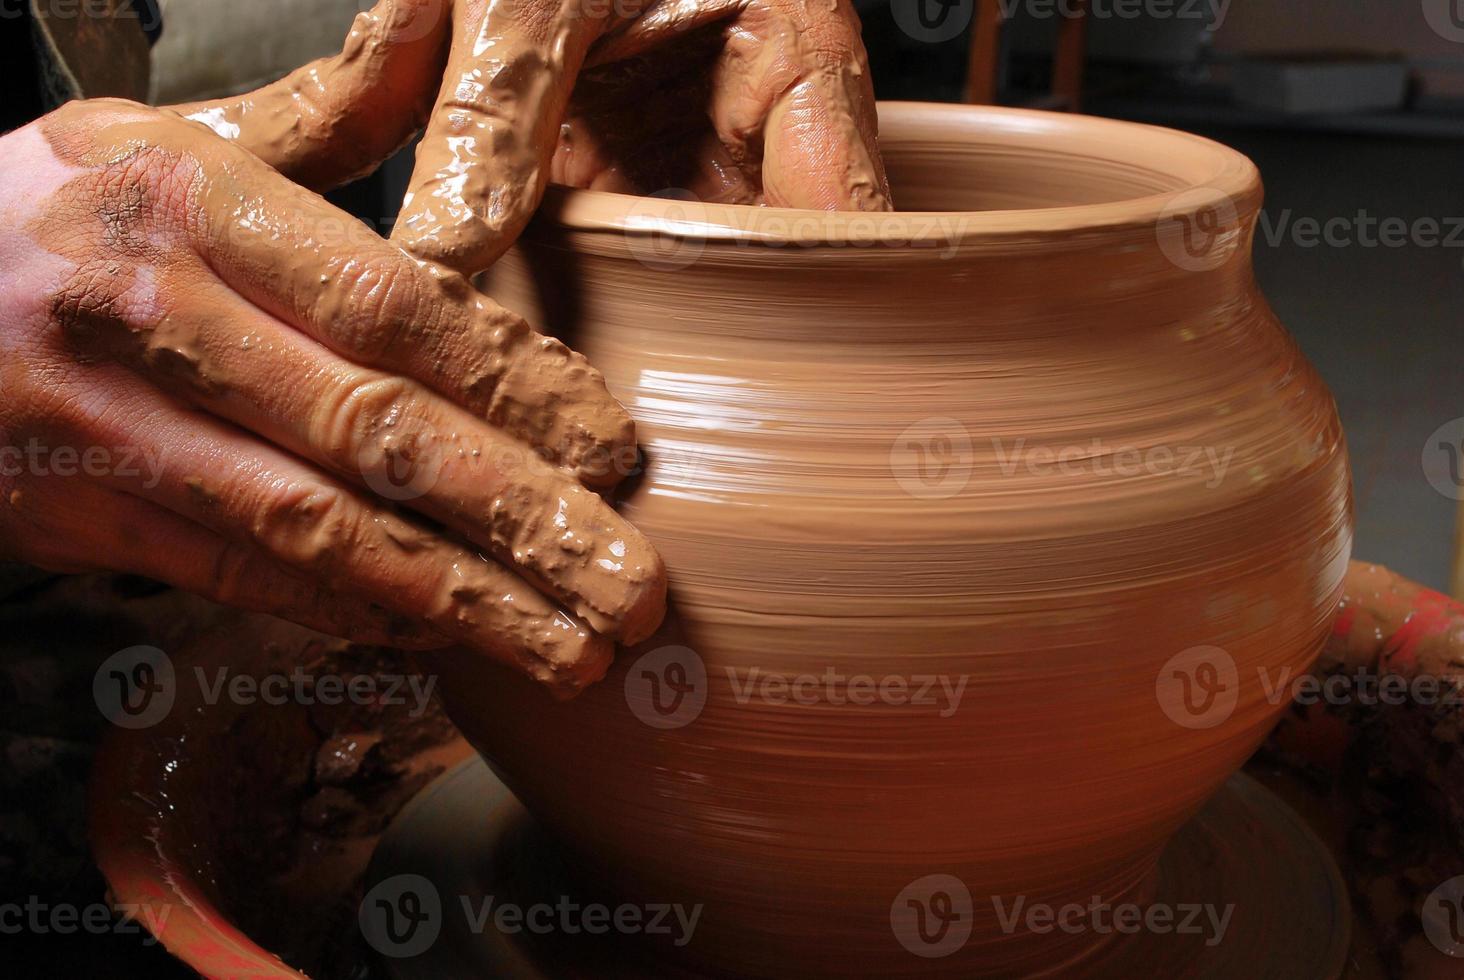 händerna på en keramiker som skapar en lerkrukan foto